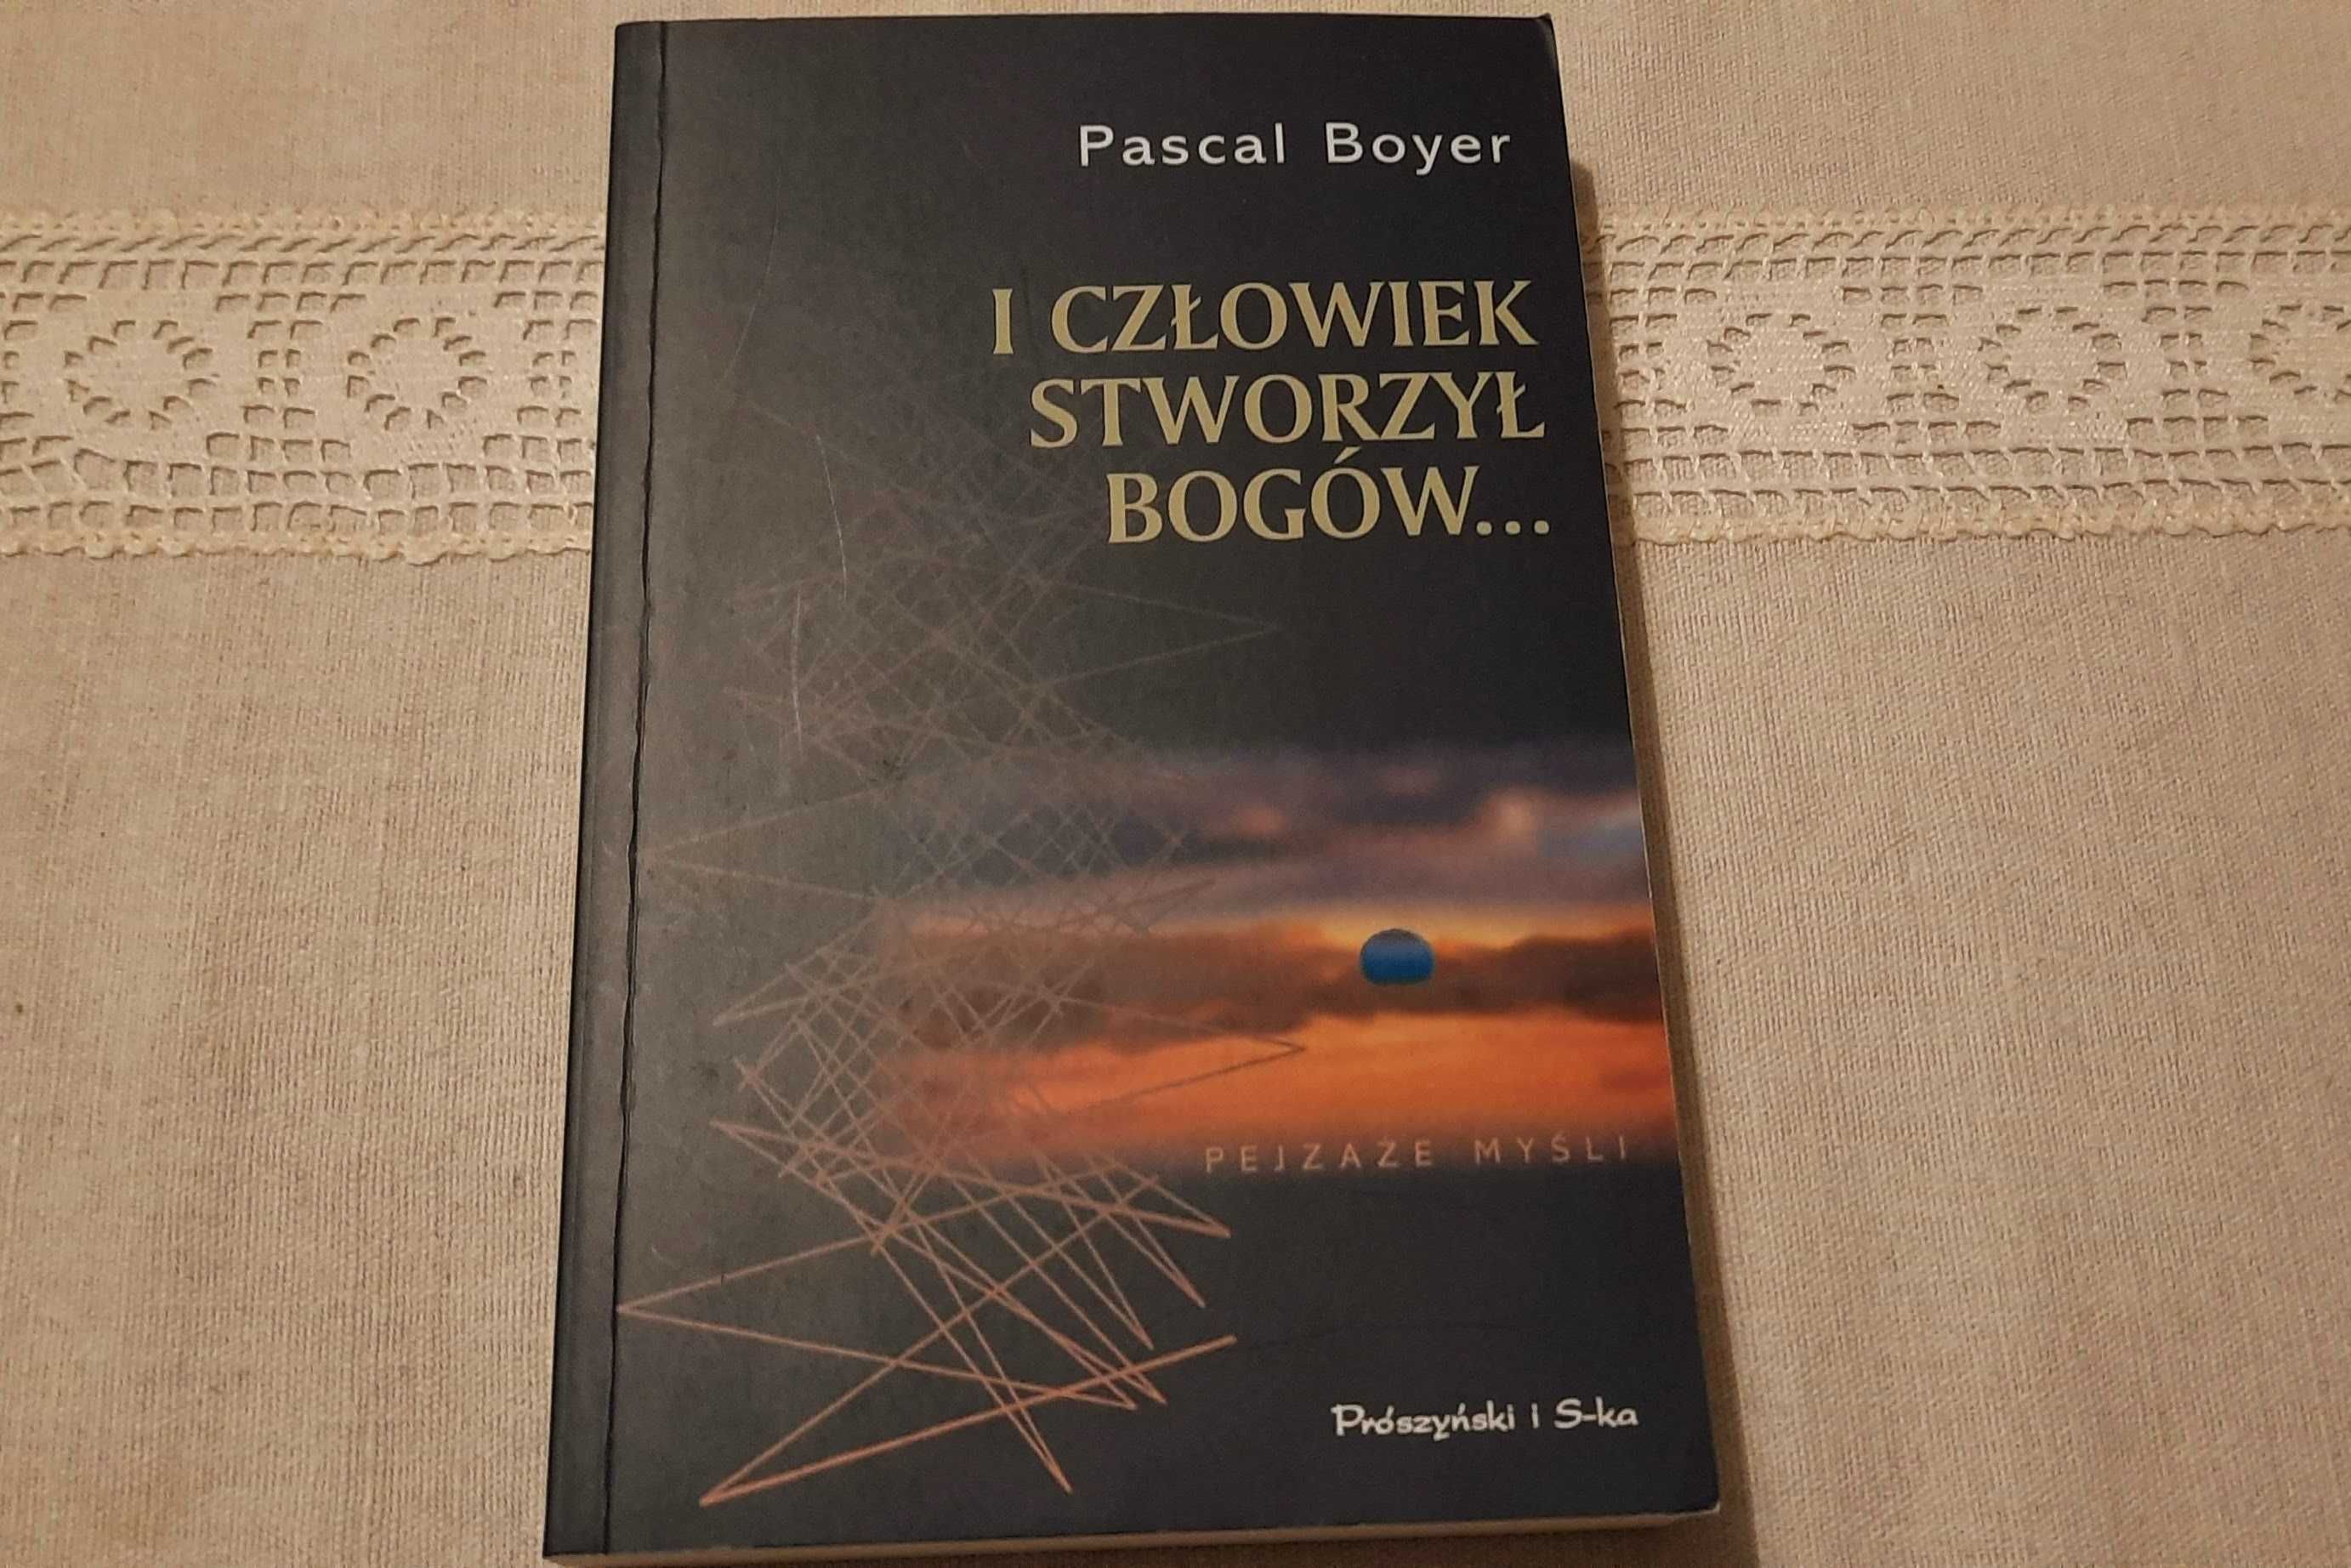 Pascal Boyer - I człowiek stworzył bogów...